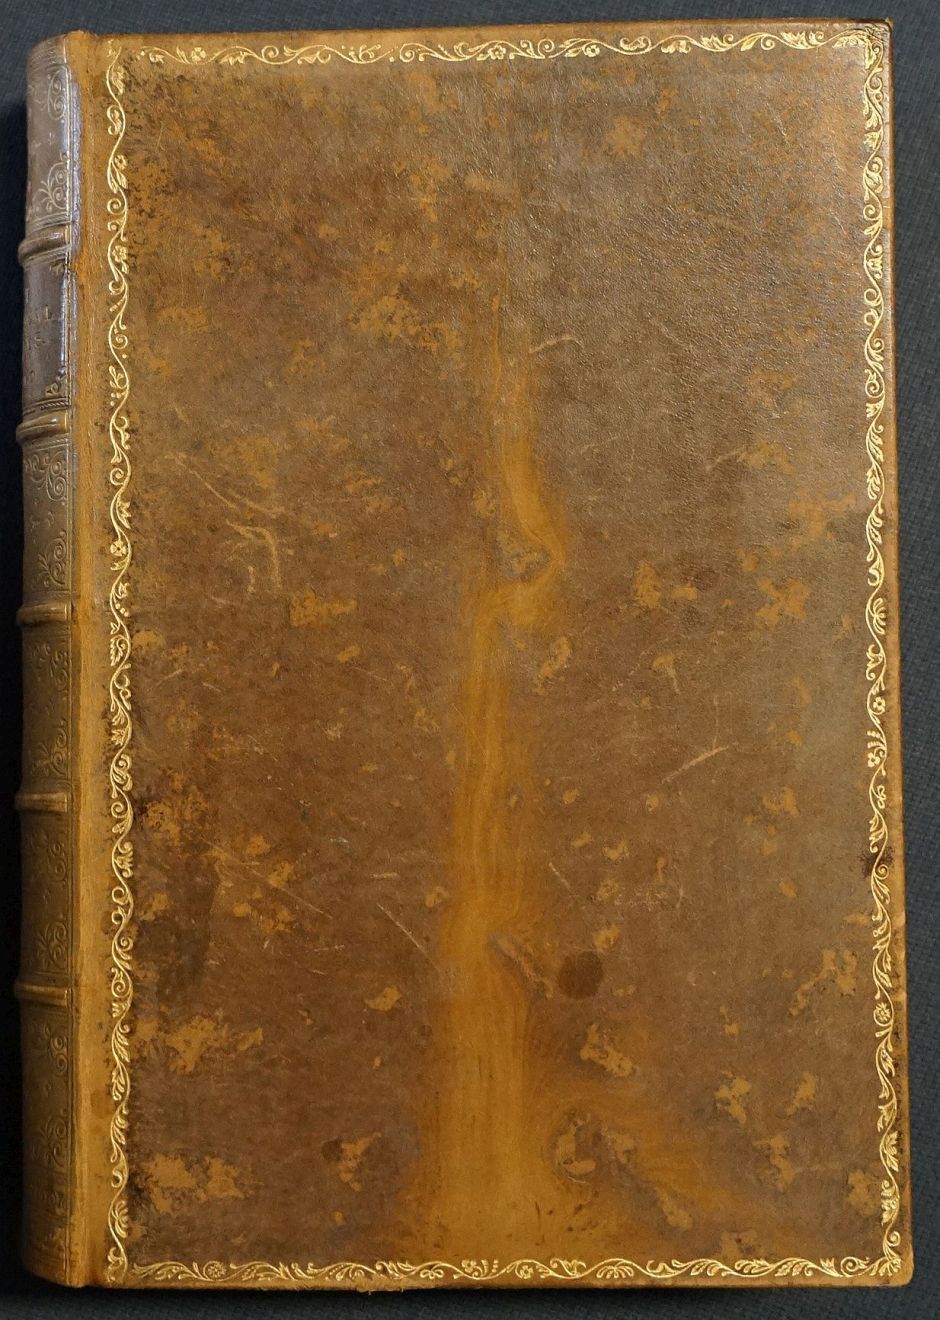 Lot 2031, Auction  115, Buchkasten, Non-Book in schönem reich goldgeprägtem marmorierten Kalbslederband